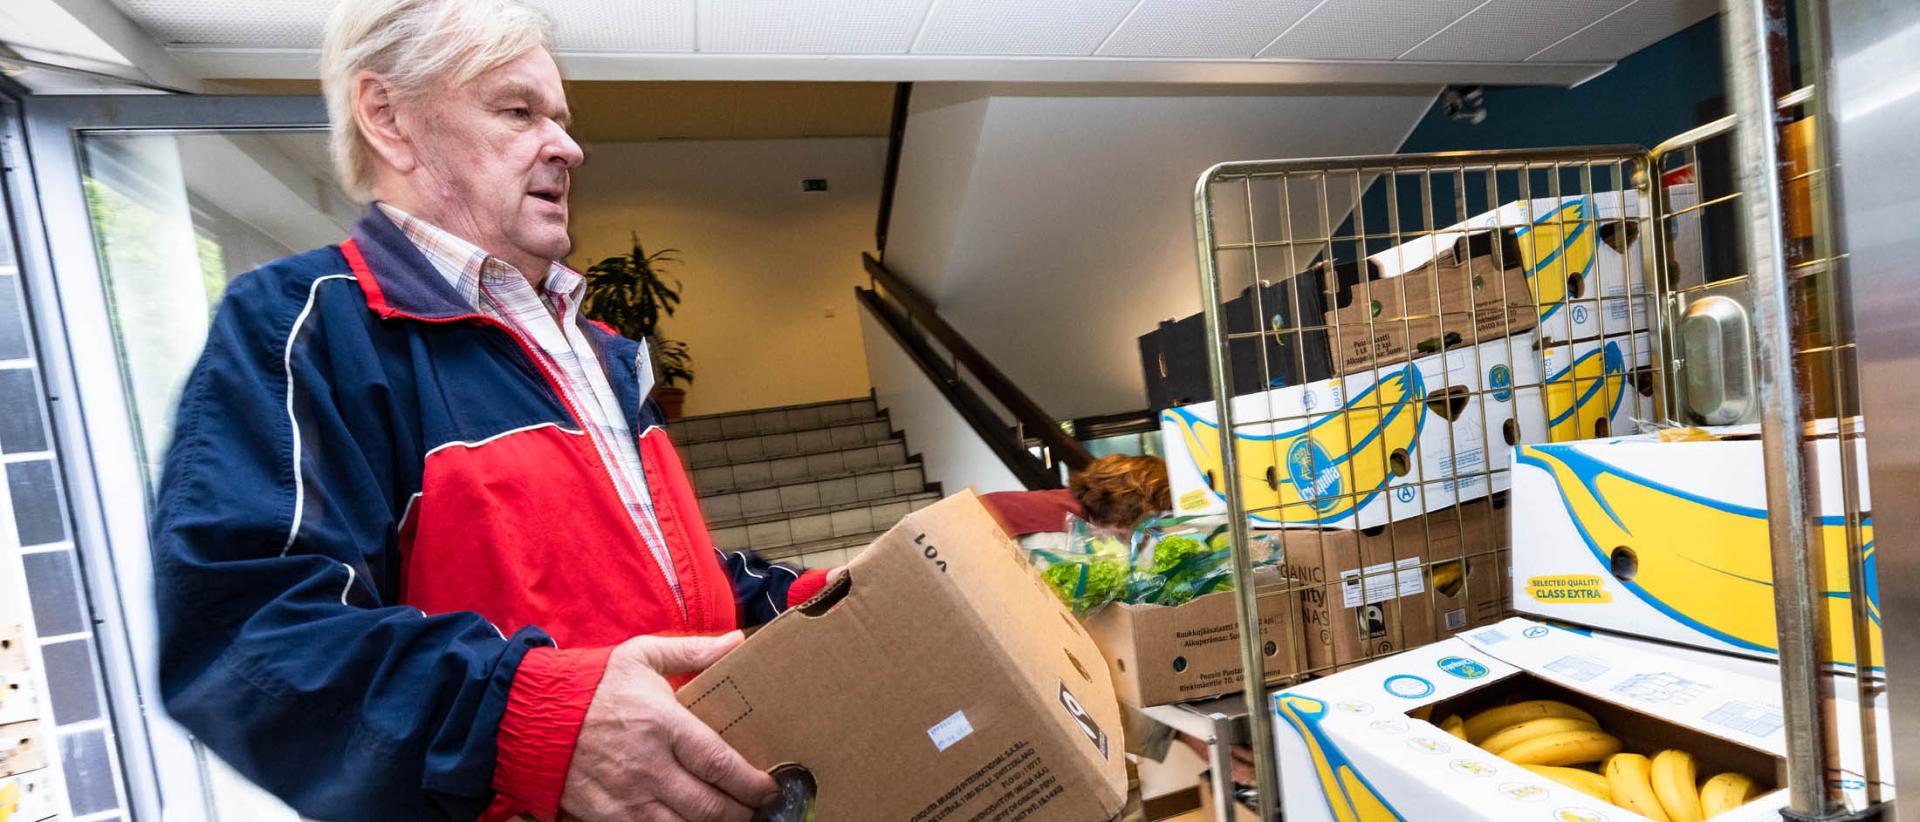 Hermannin diakoniatalon vapaaehtoistyöntekijä nostelee banaanilaatikoita